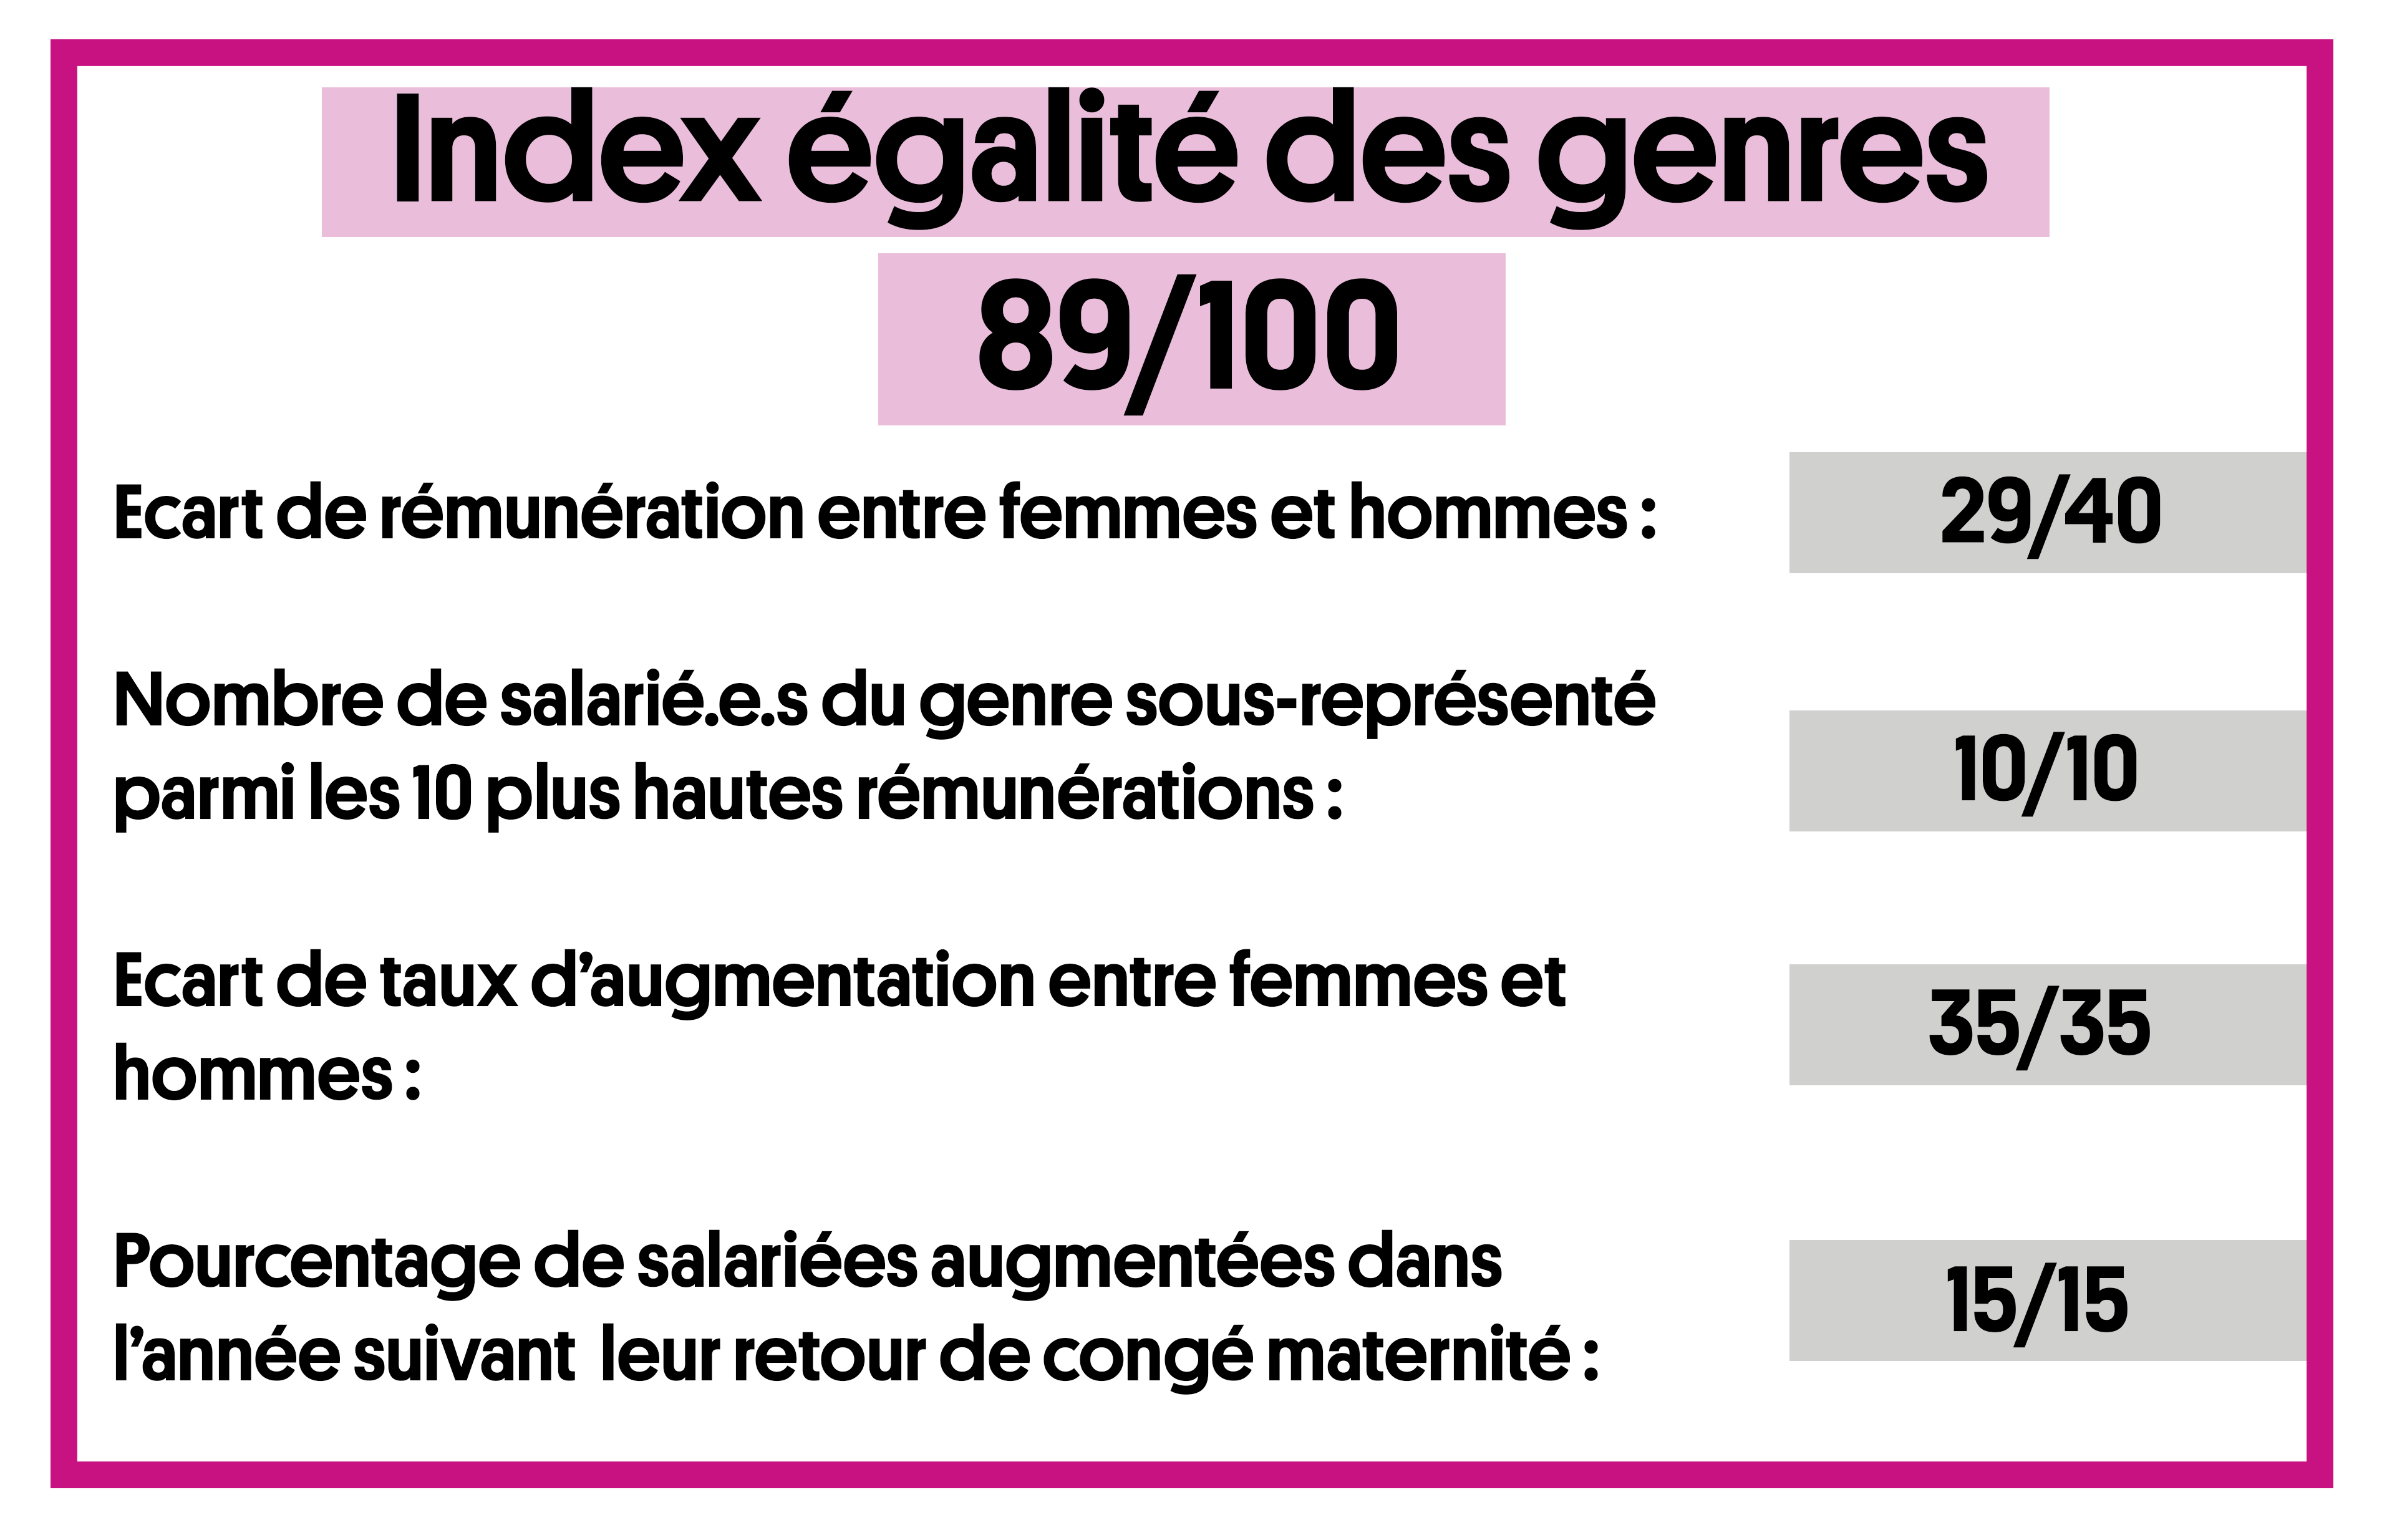 Index égalité genres(1).png